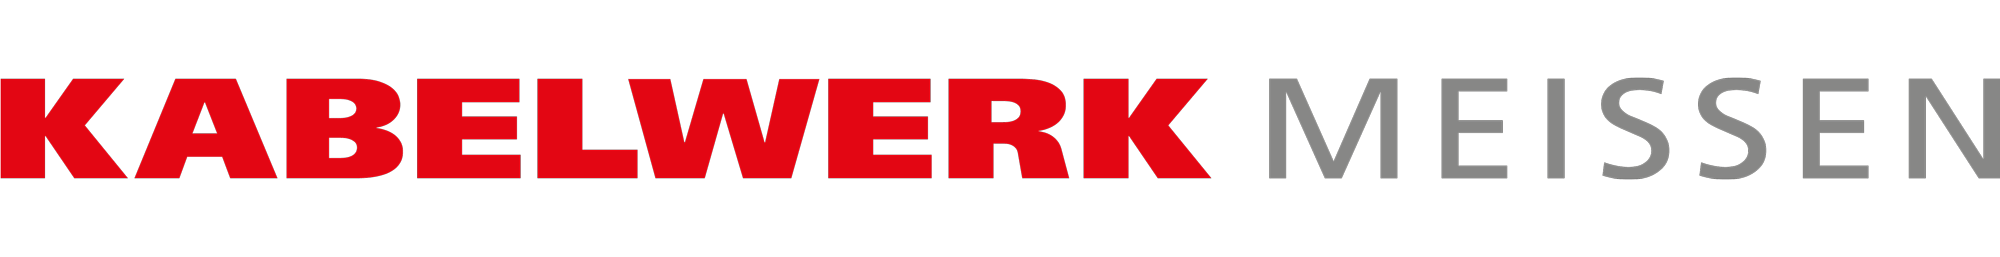 Kabelwerk Meissen Logo